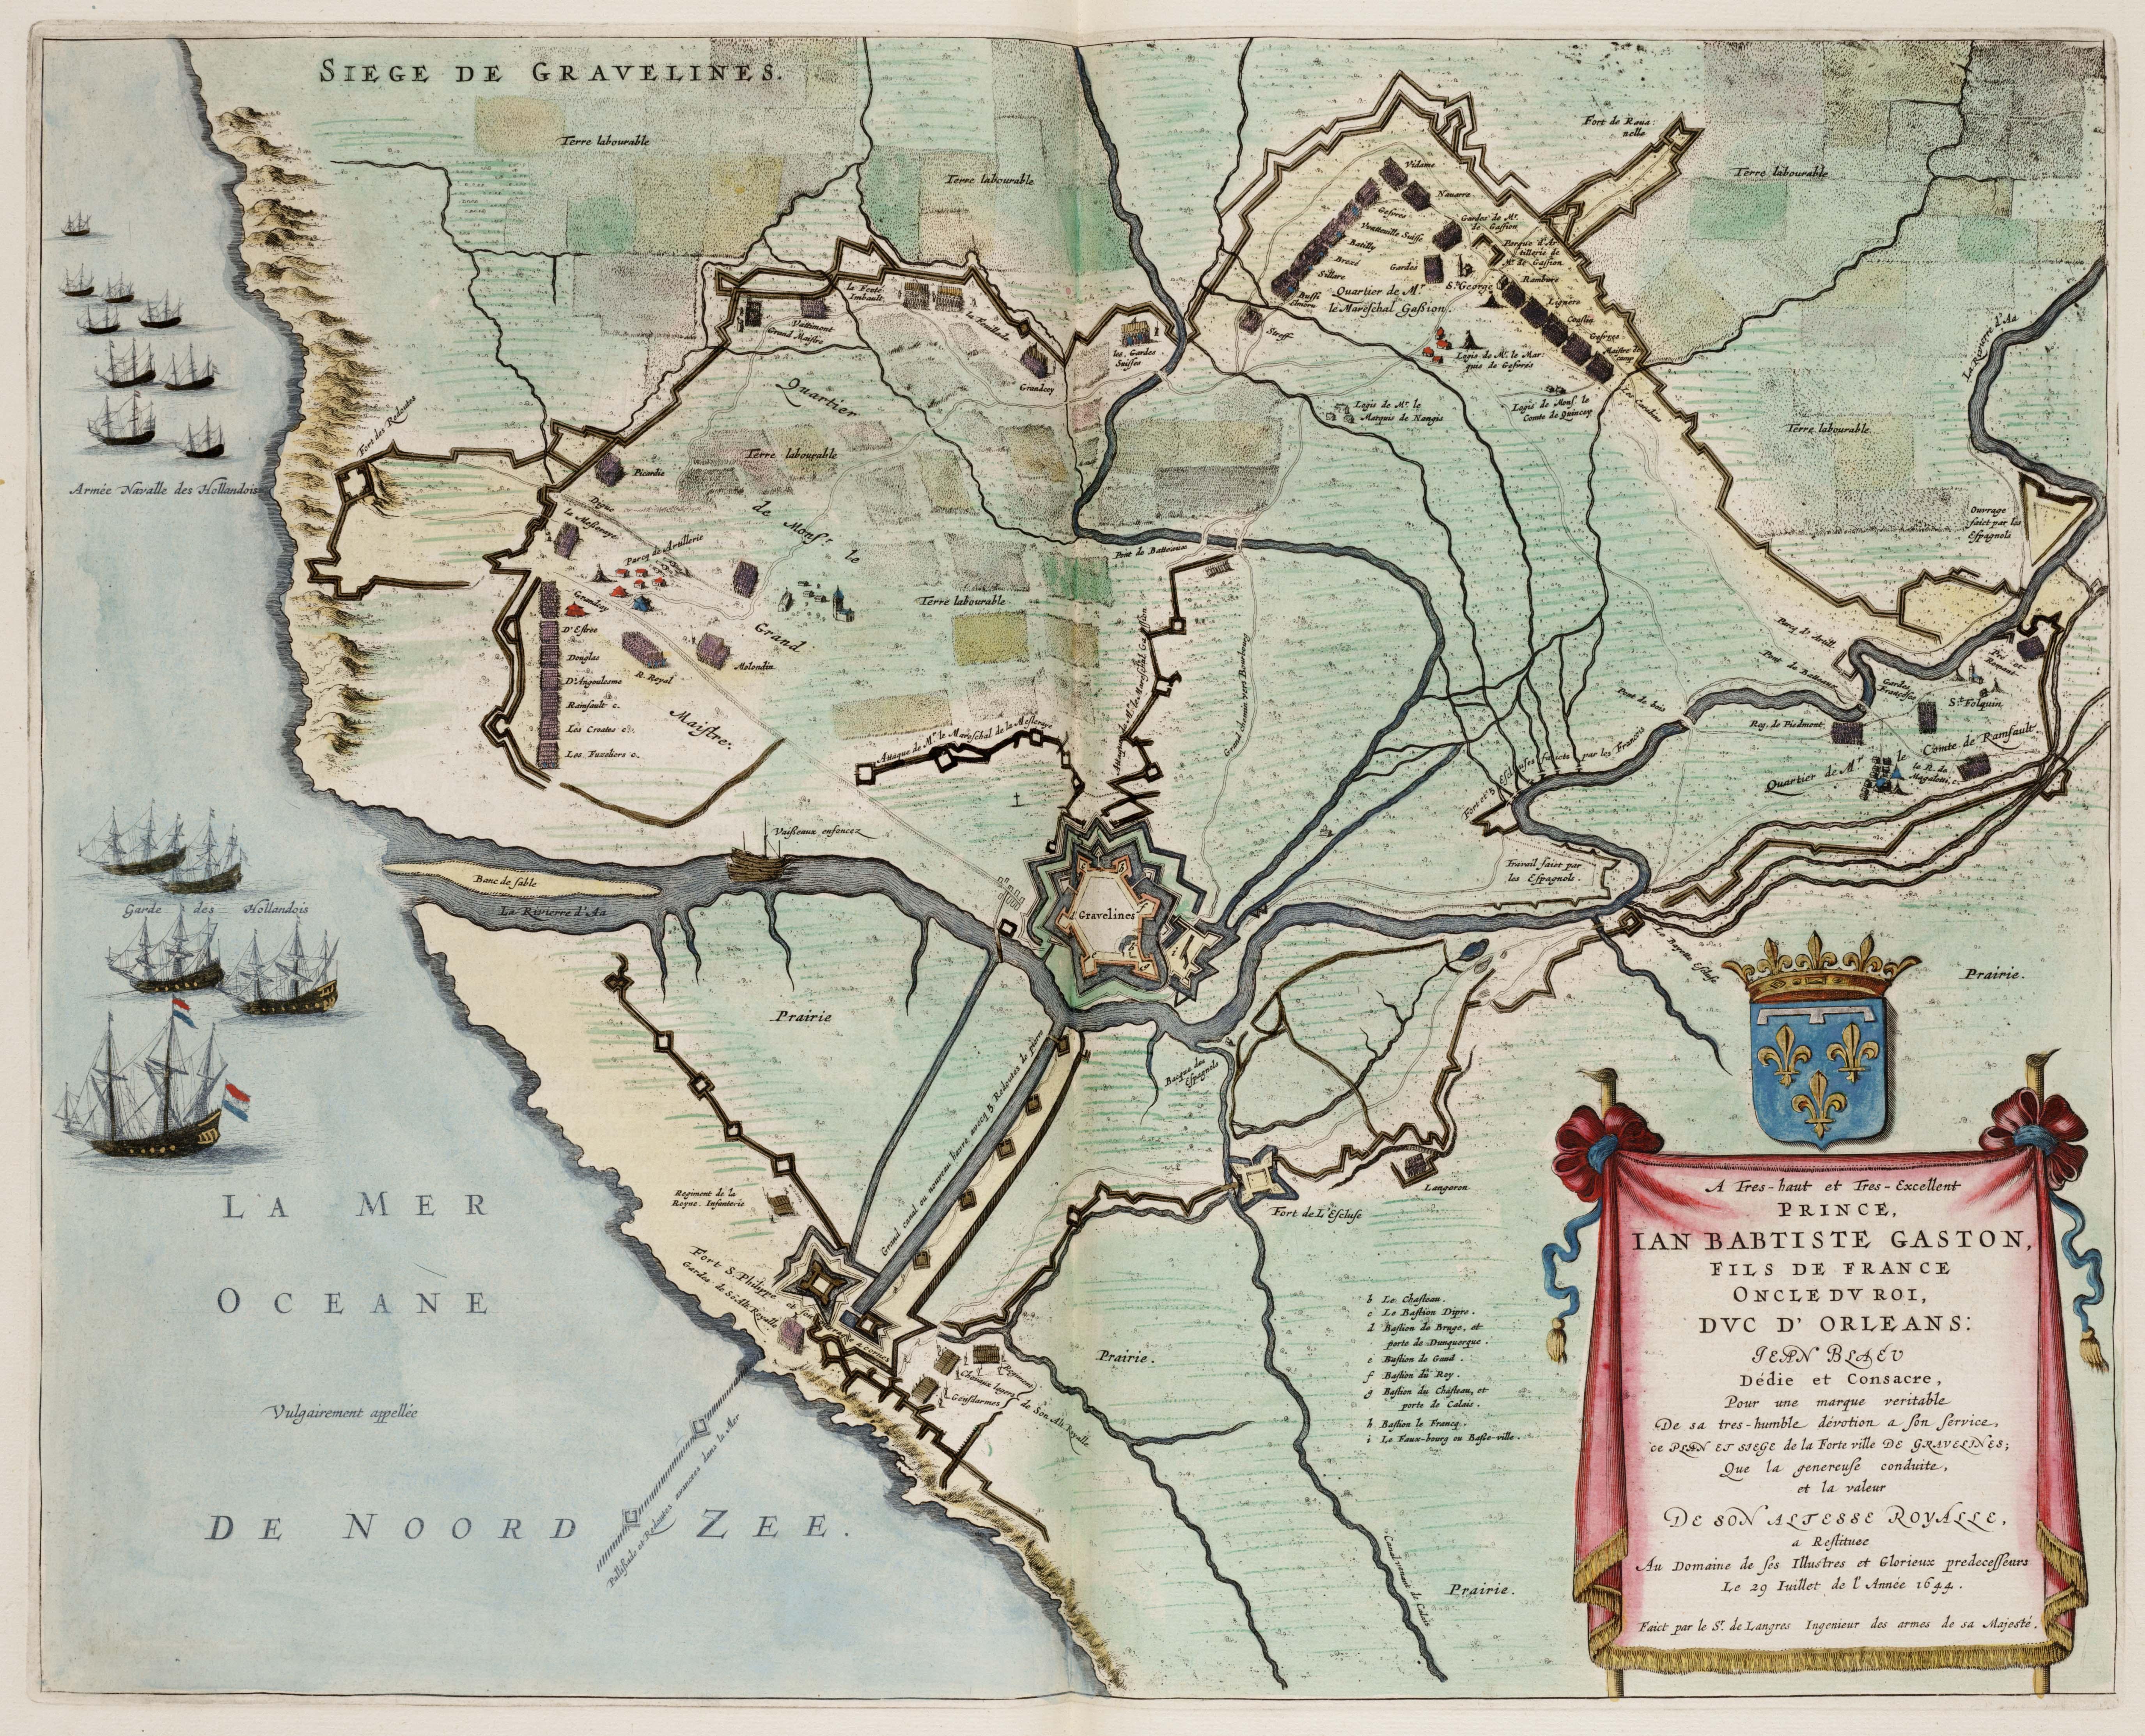 Siege de Gravelines en 1644 (Atlas van Loon)